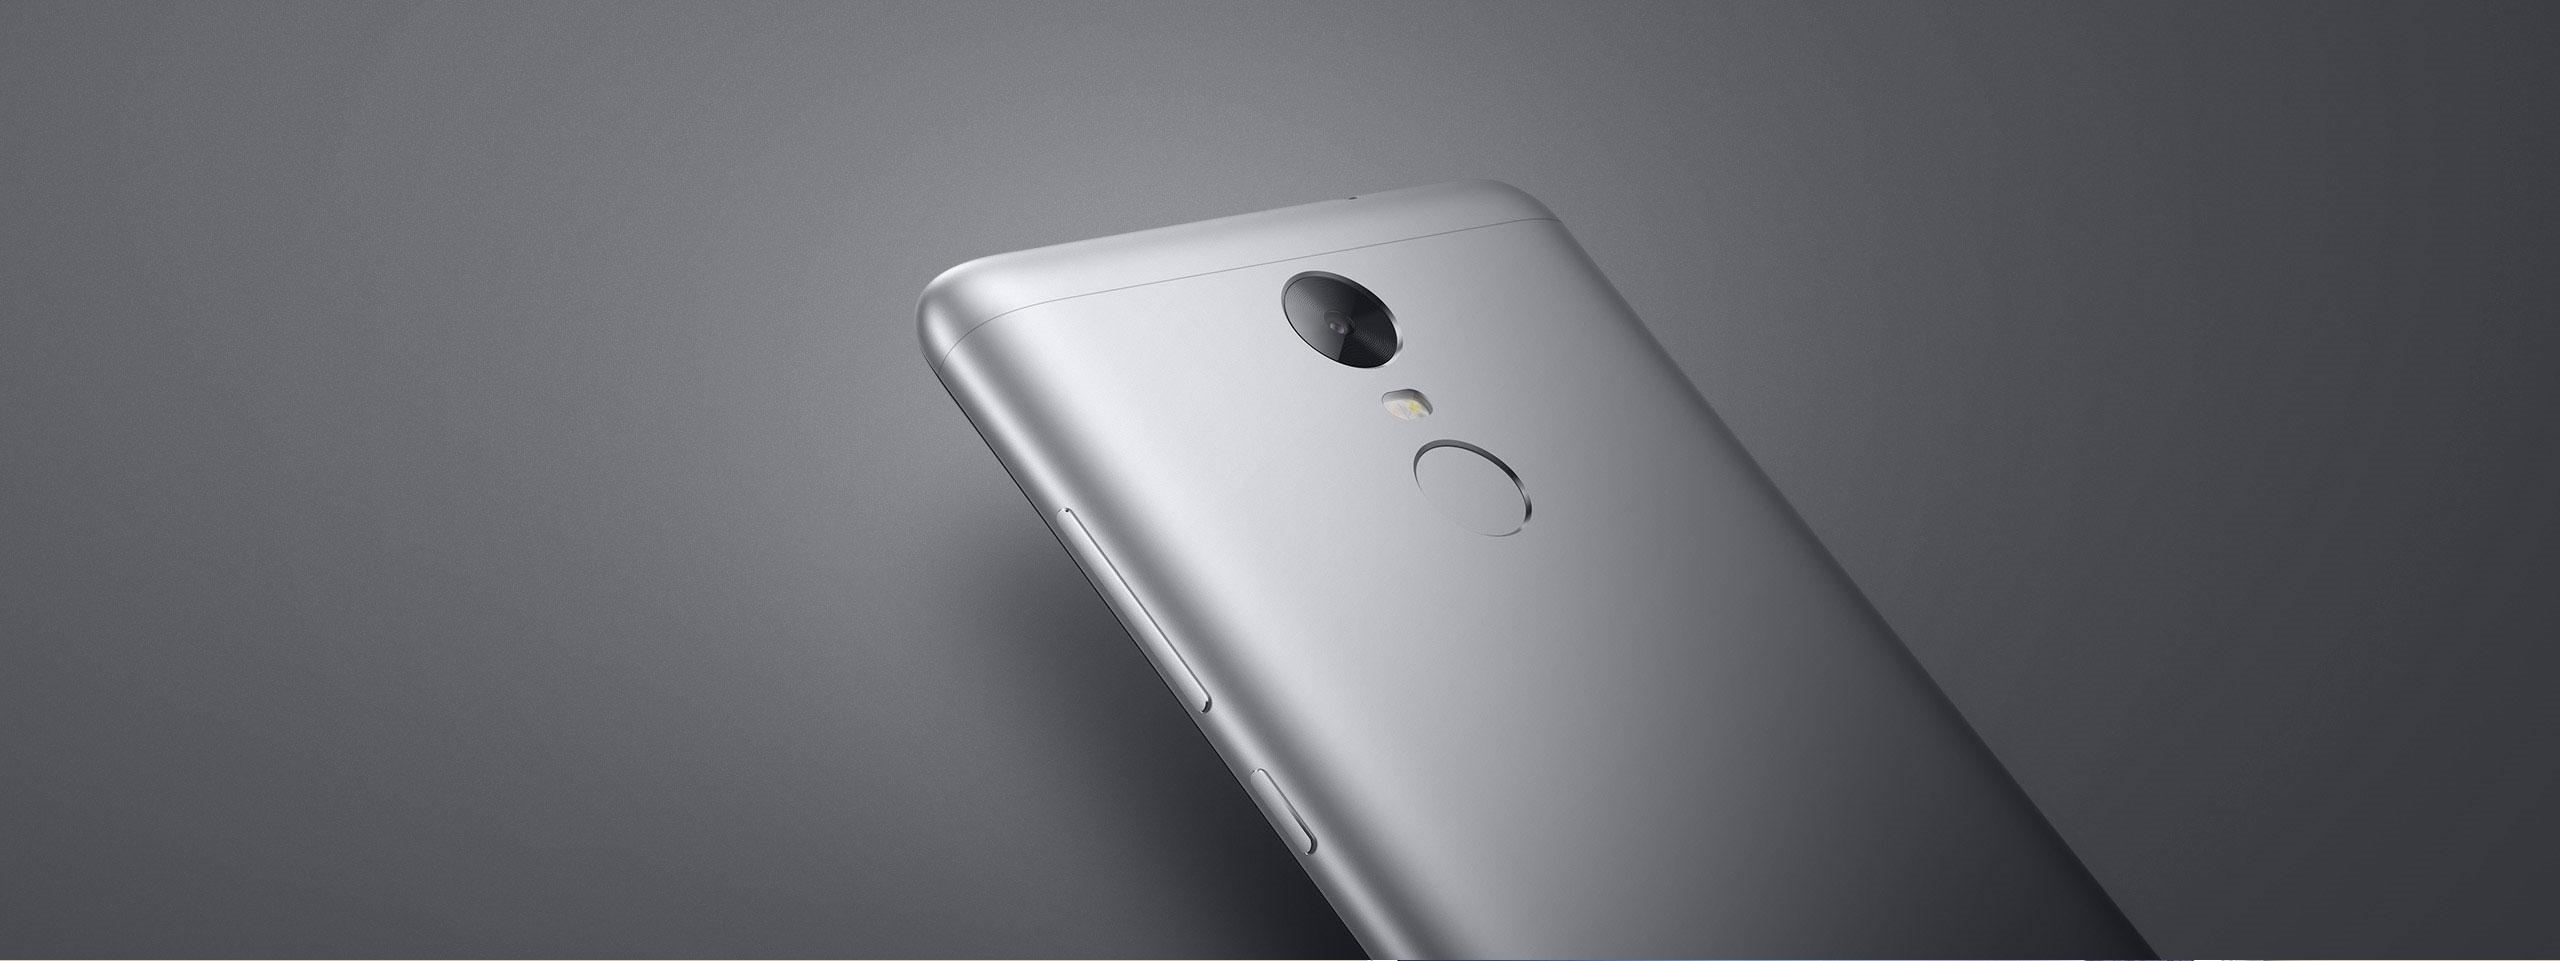 Xiaomi Redmi Note 3 Pro gris detalle de la cámara y de la huella digital